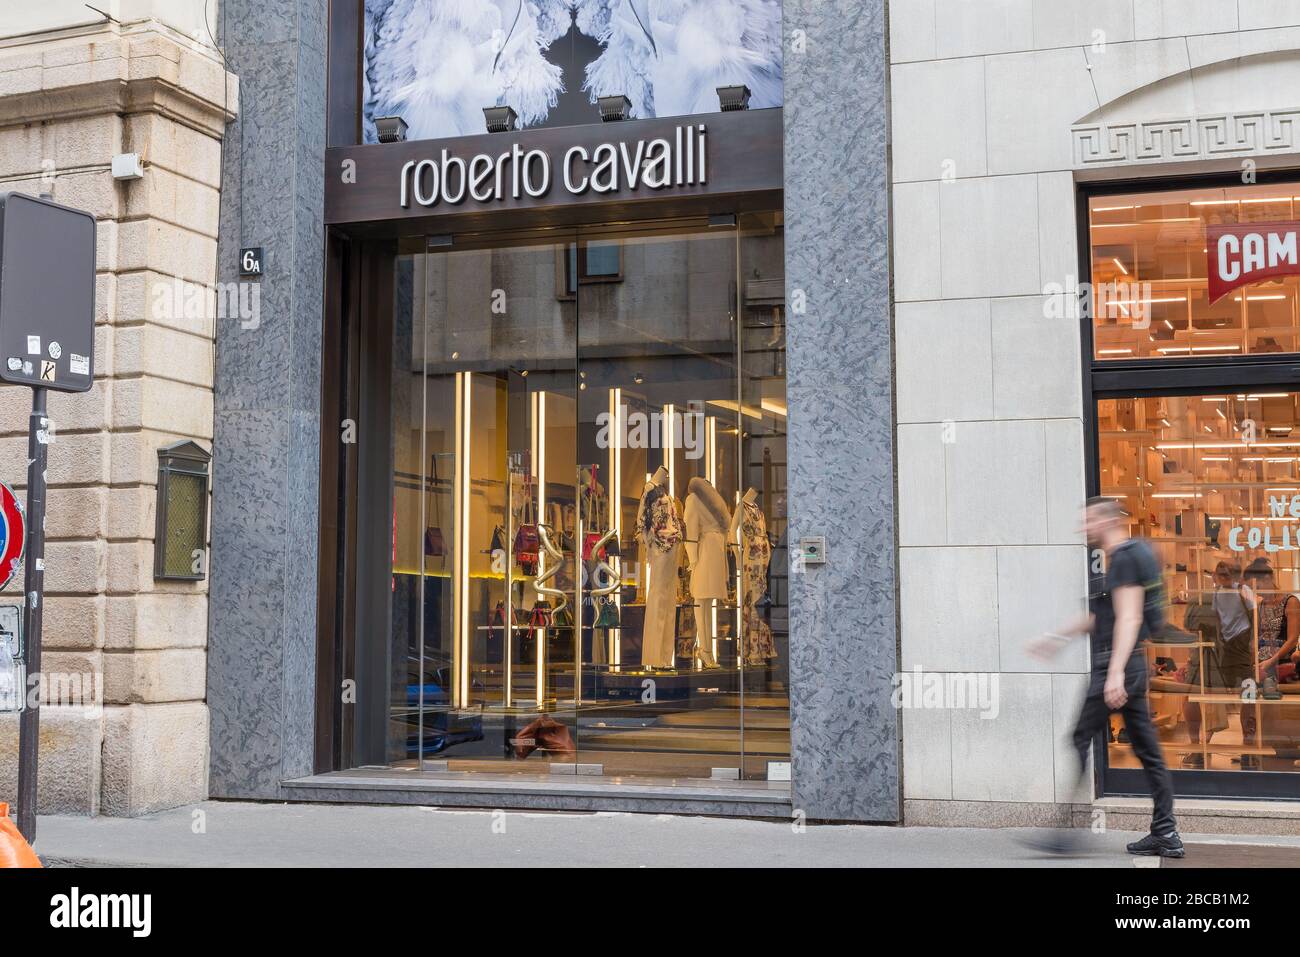 Negozio Roberto cavalli in via Montenapoleone, Milano Foto Stock